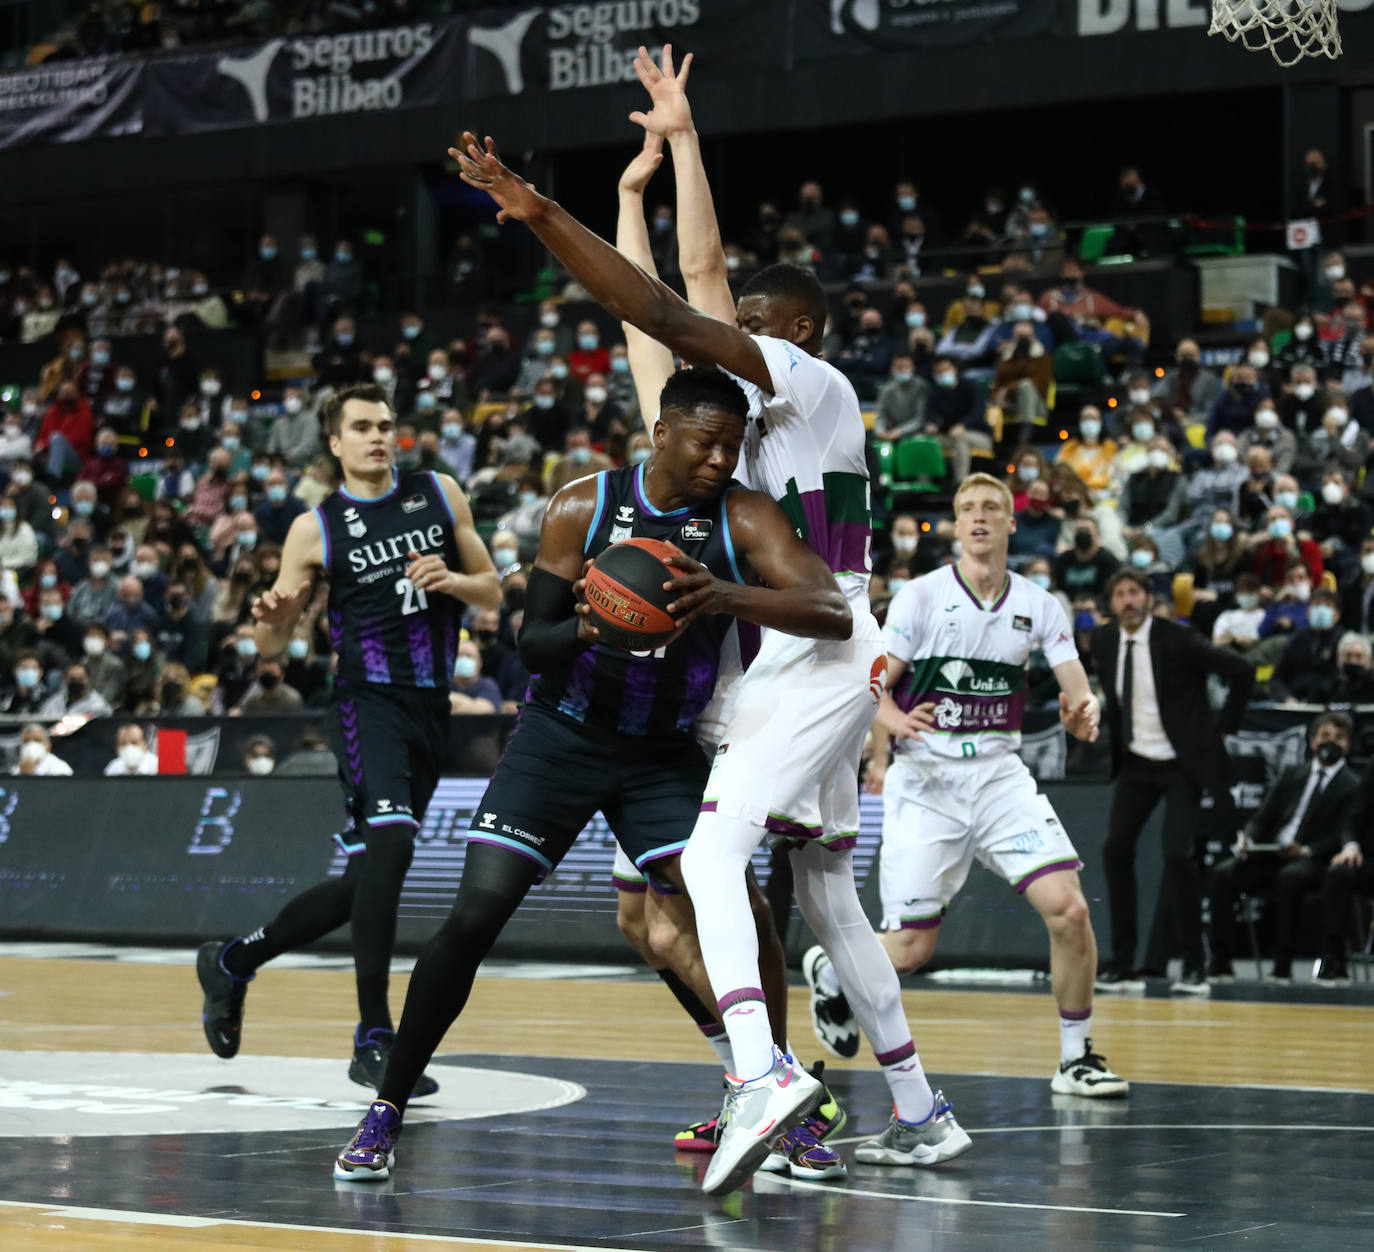 Fotos: Bilbao Basket-Unicaja en imágenes